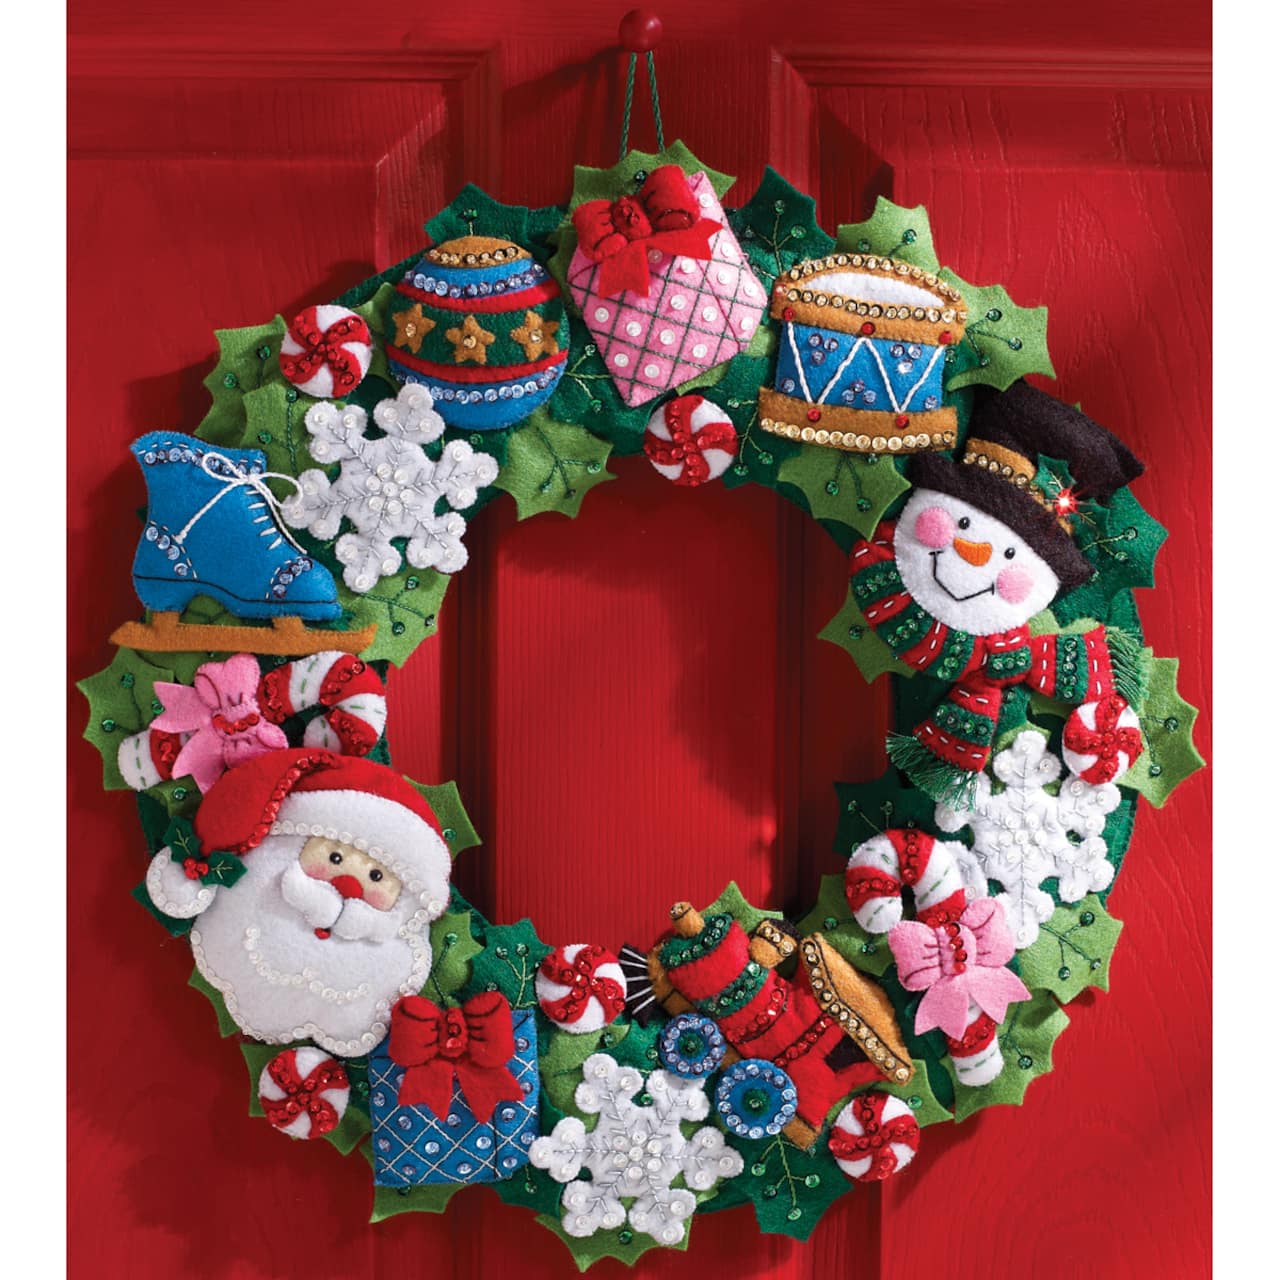 Bucilla Christmas Toys Felt Wreath Kit